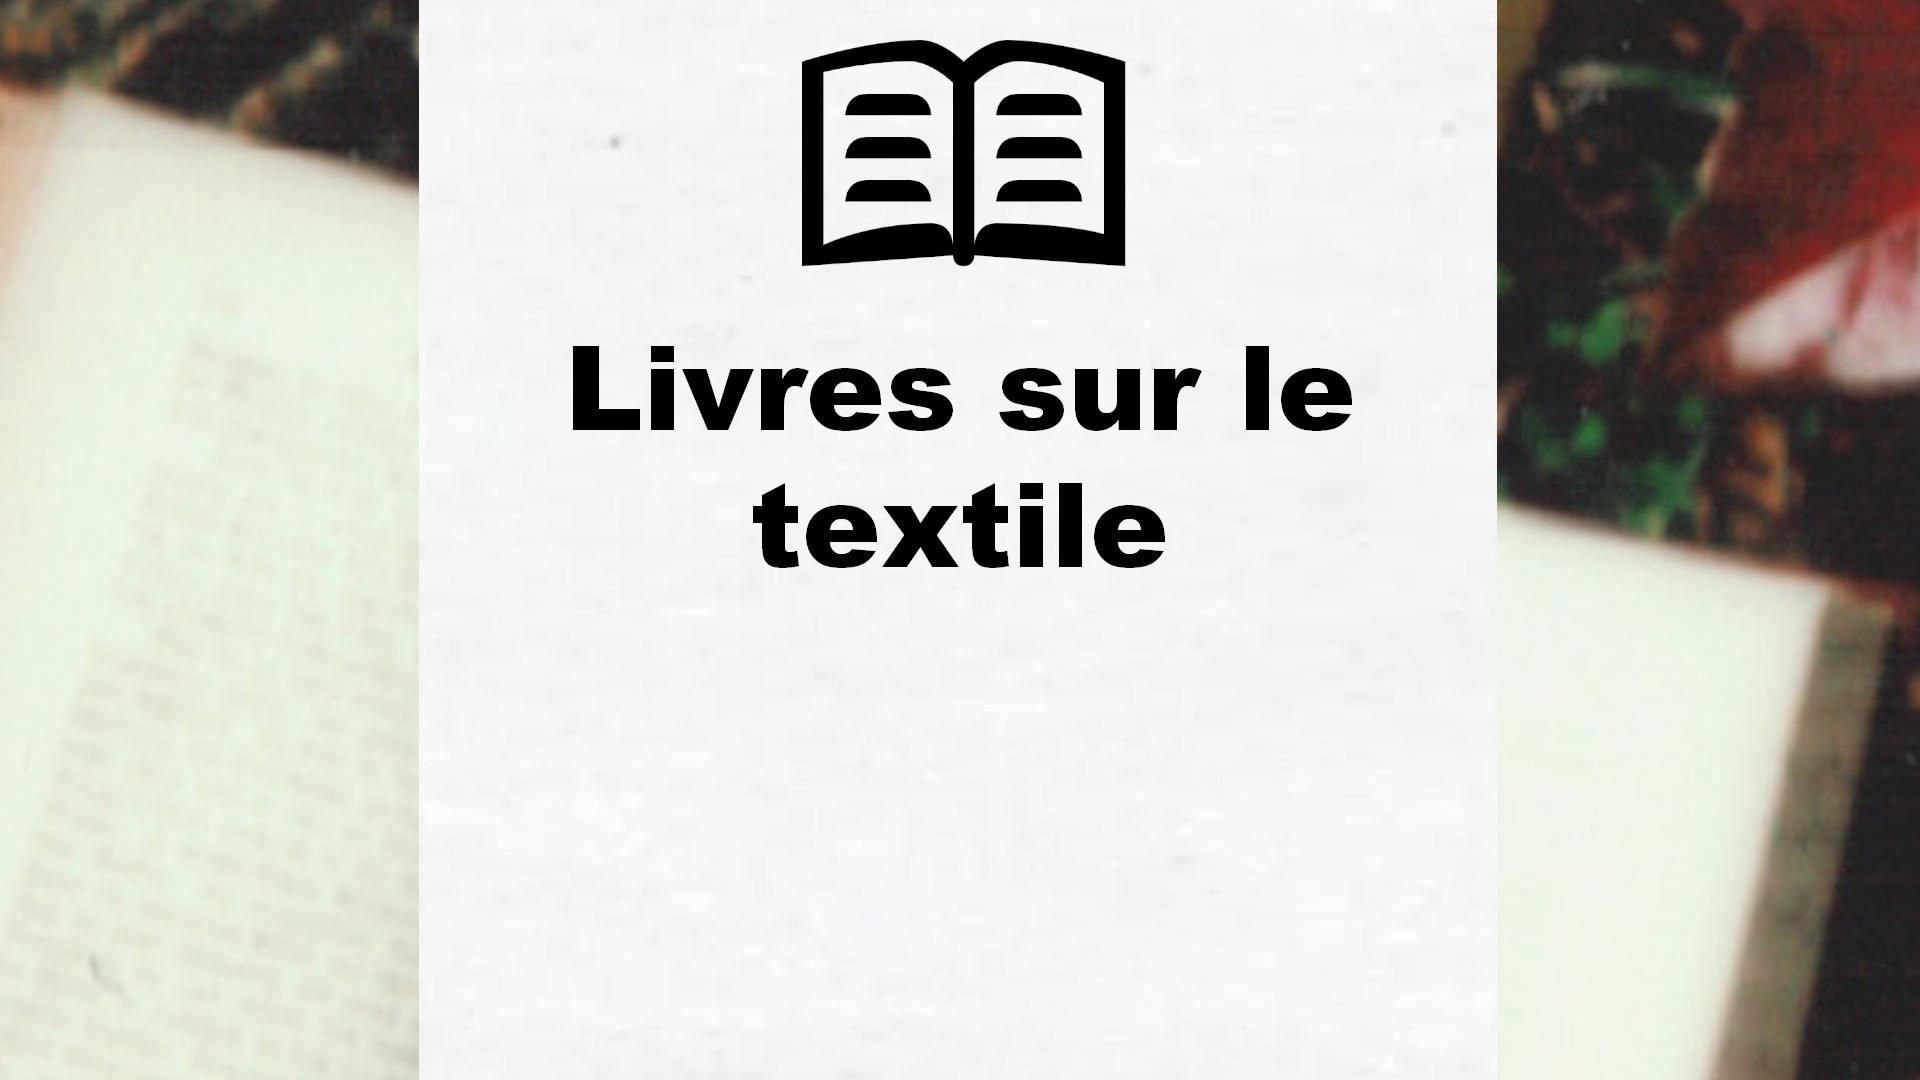 Livres sur le textile